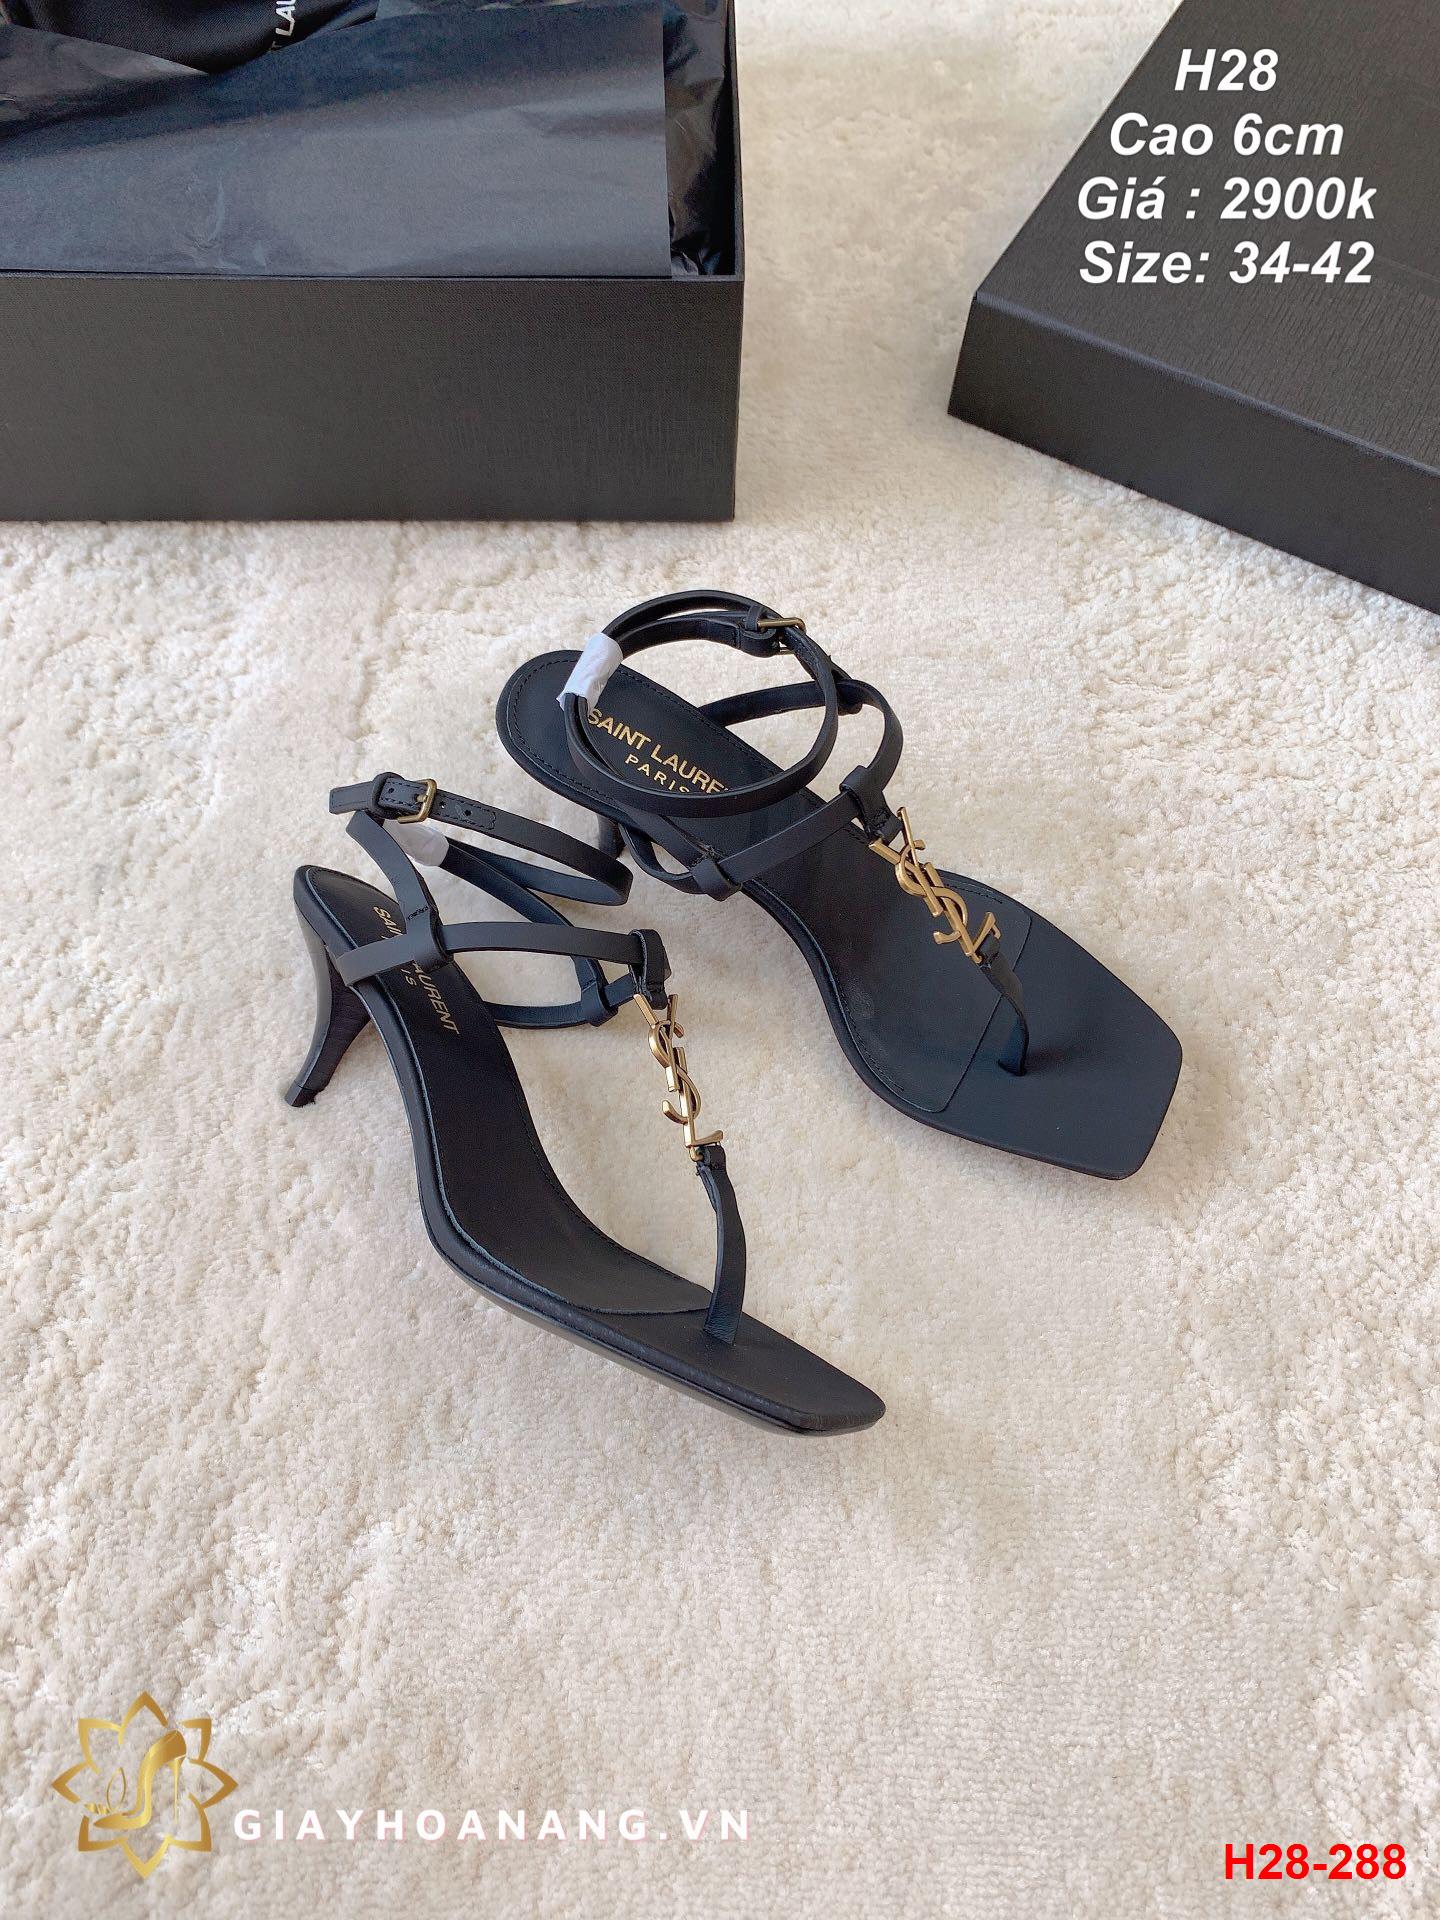 H28-288 Saint Laurent sandal cao 6cm siêu cấp